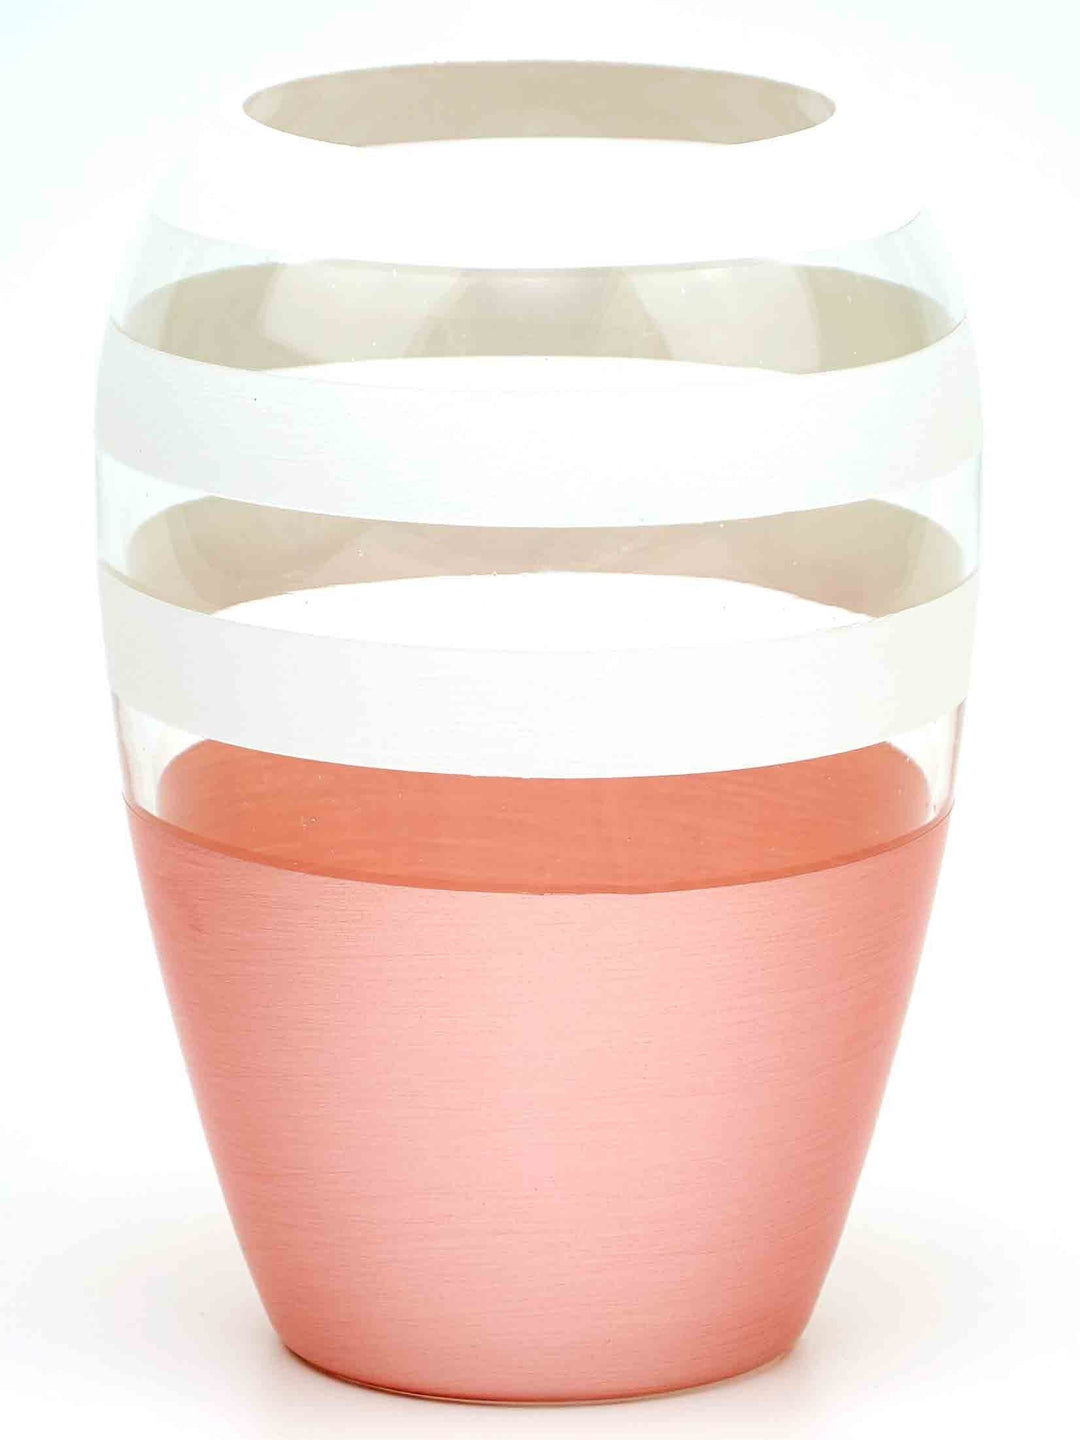 Handpainted Glass Vase for Flowers | Art Oval Vase | Gift for her | Home Room Decor | Table vase 8 in-1